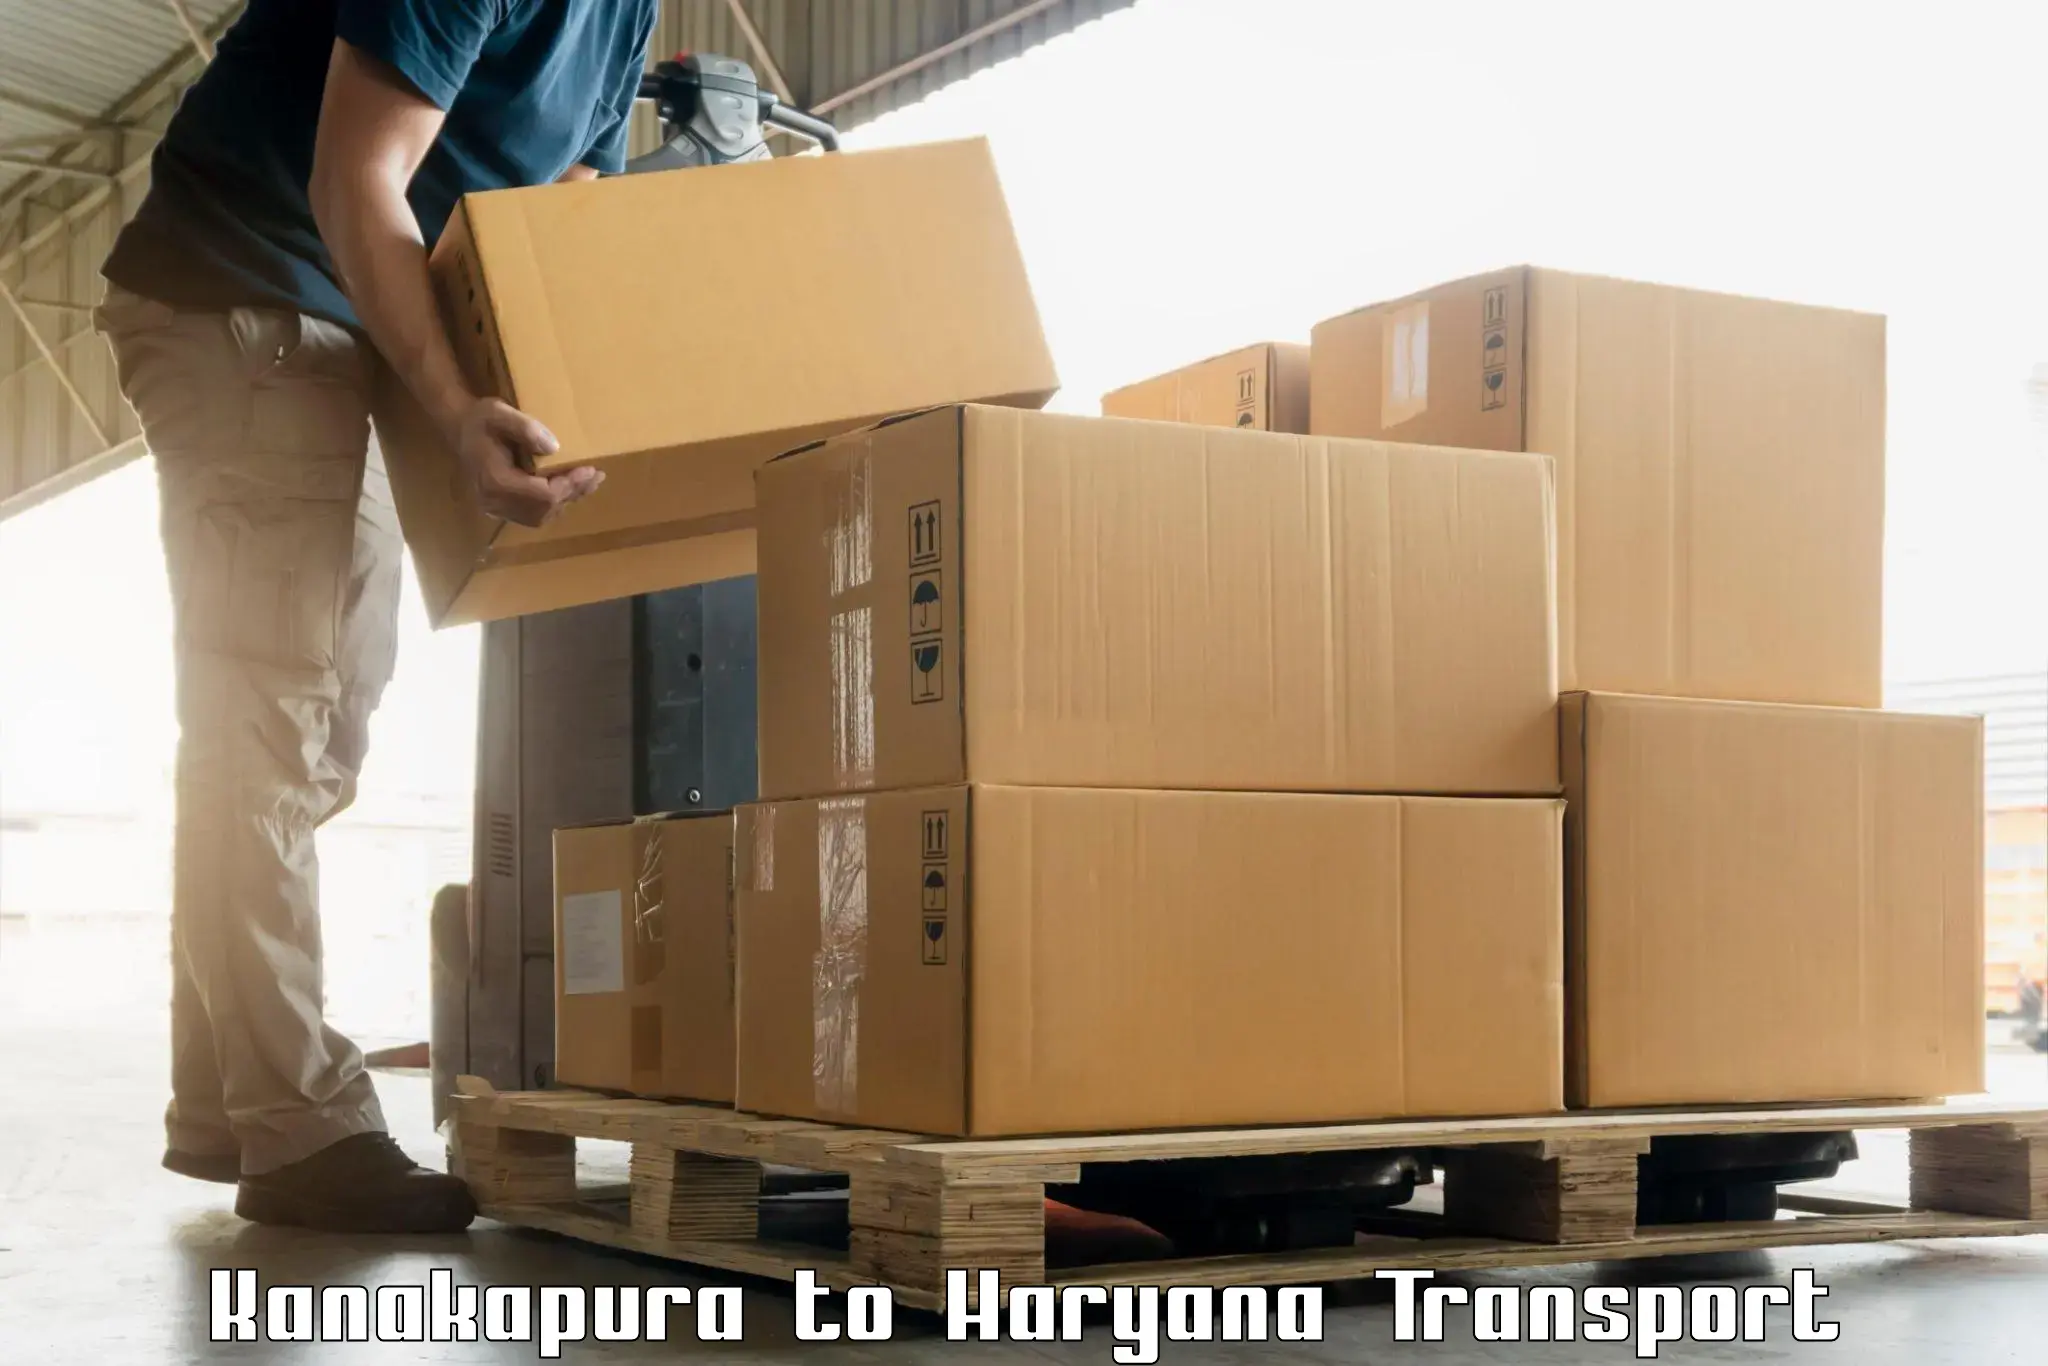 Air cargo transport services Kanakapura to Charkhari